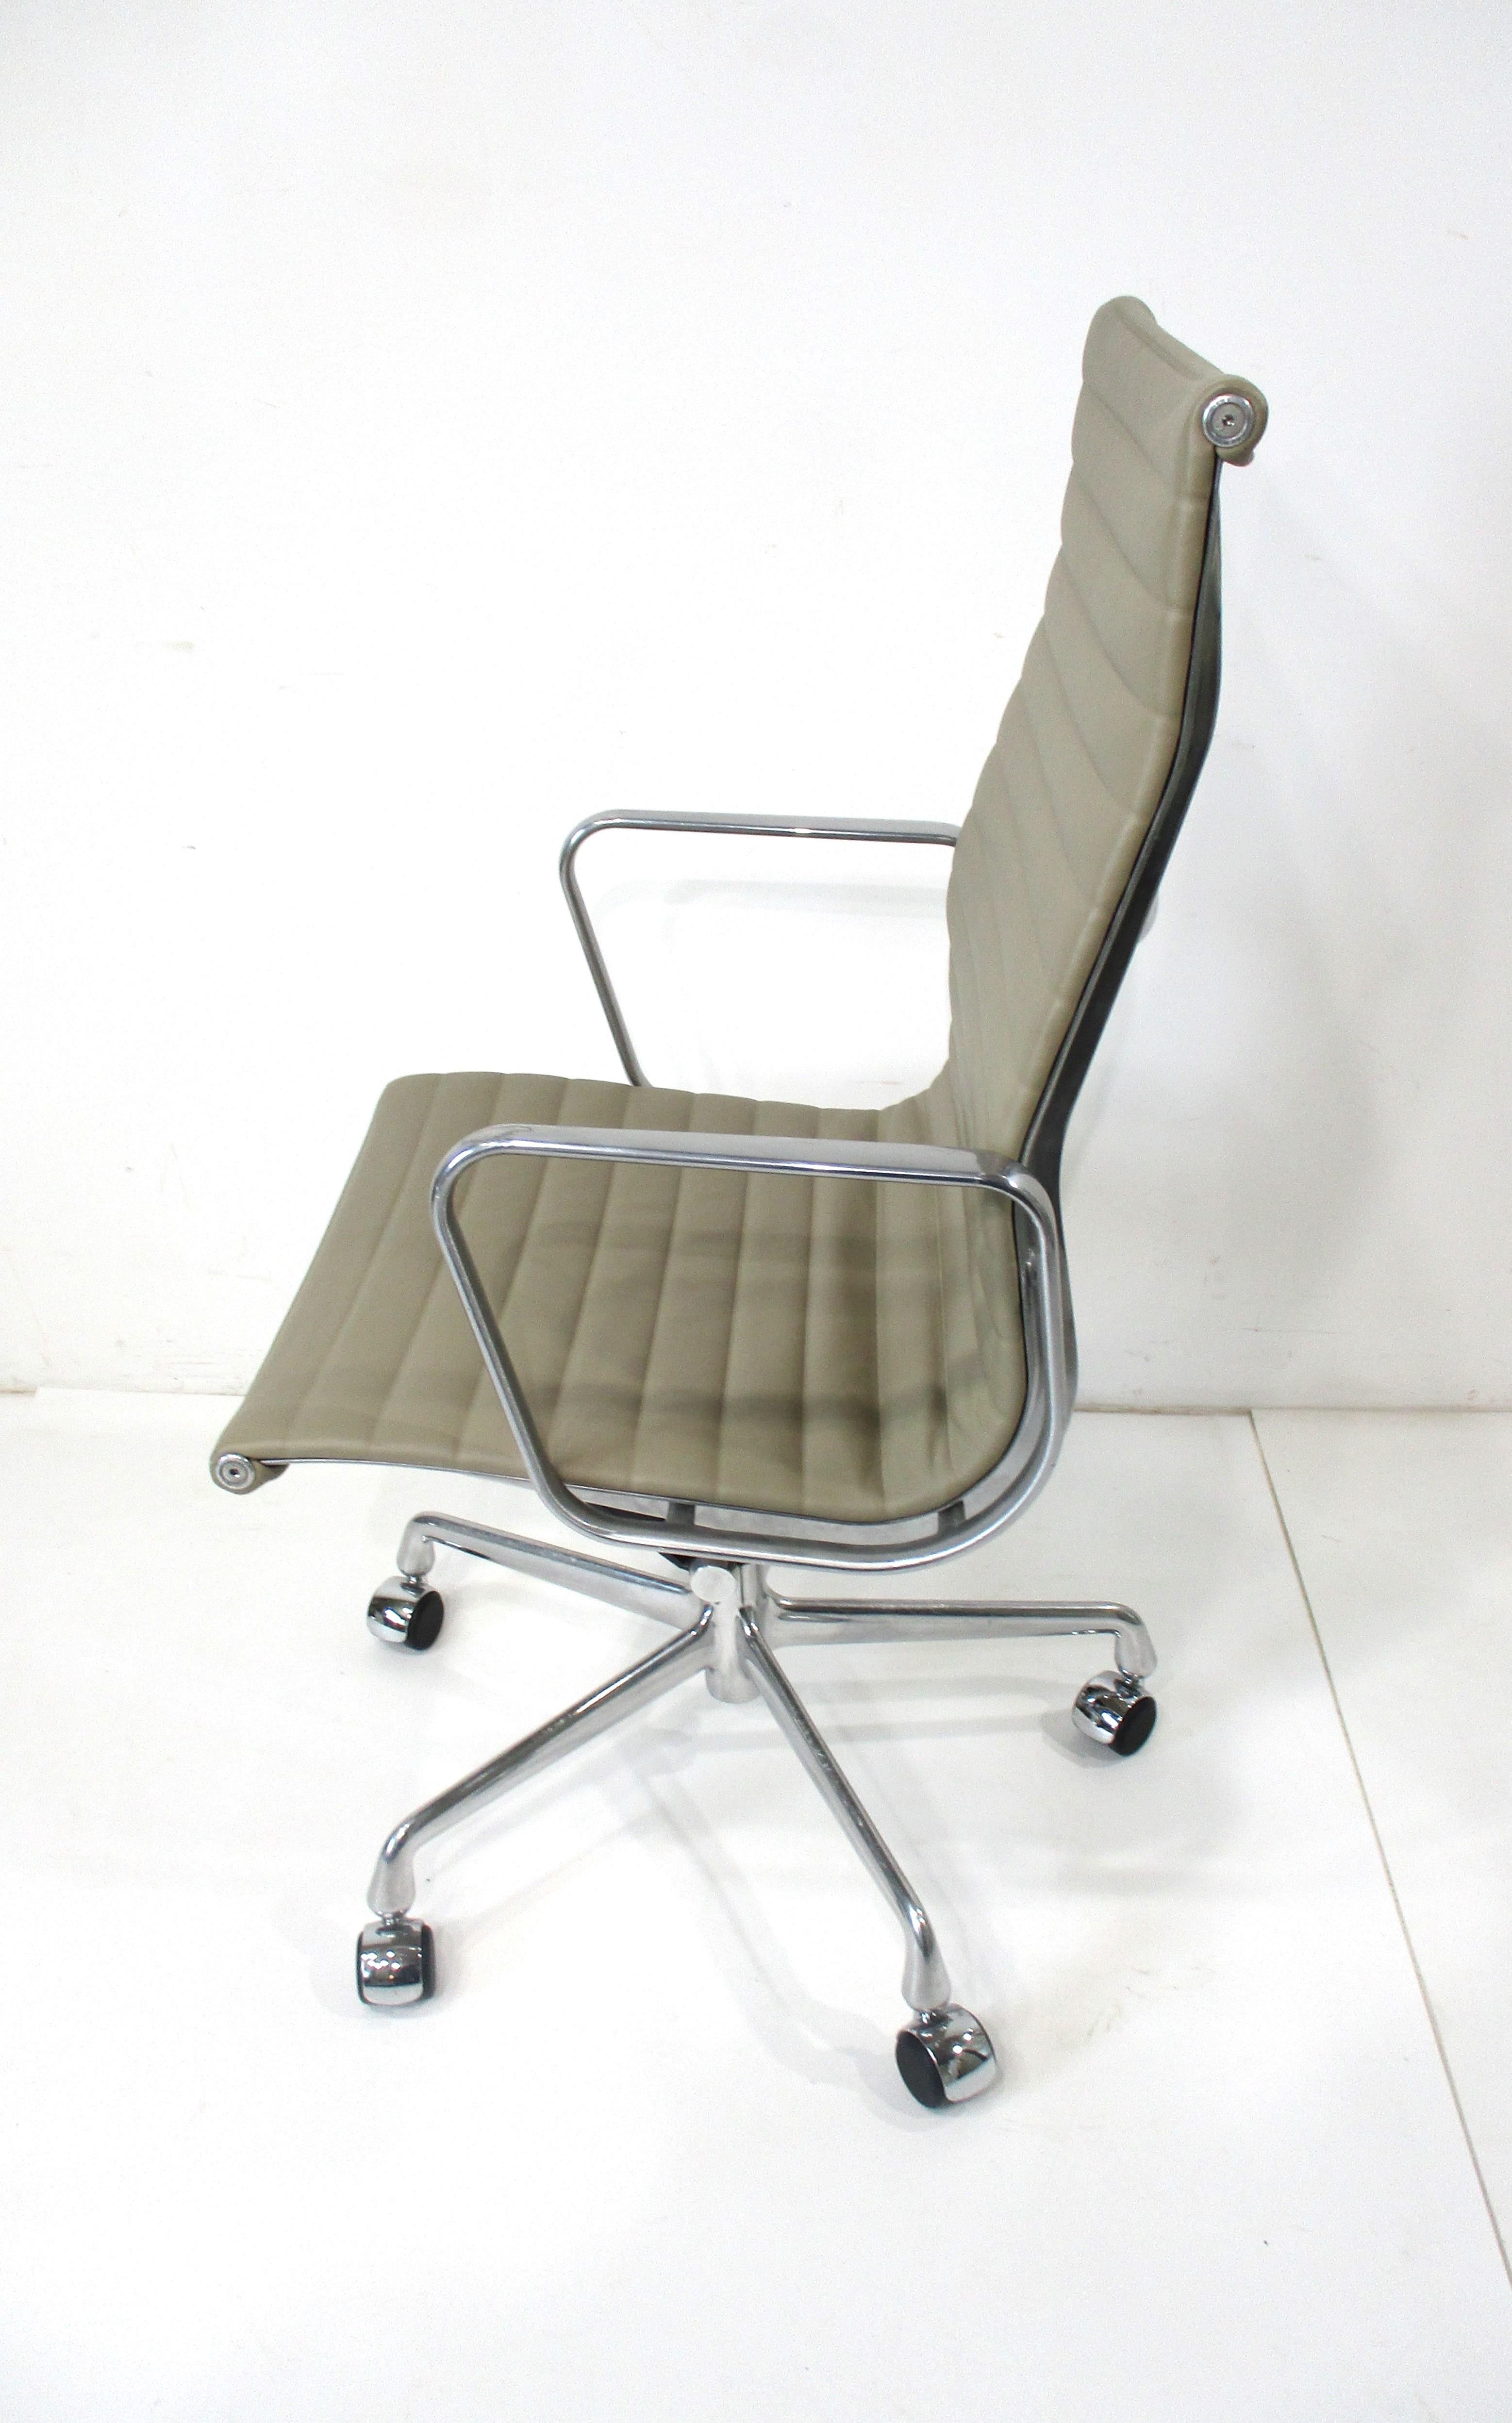 Édition 1958 - 2008 du 50e anniversaire du fauteuil de groupe en aluminium à haut dossier roulant. Tapissé d'un dos en cuir lisse et doux de couleur taupe, uniquement pour cette édition, avec une base en étoile en aluminium poli. Cette chaise